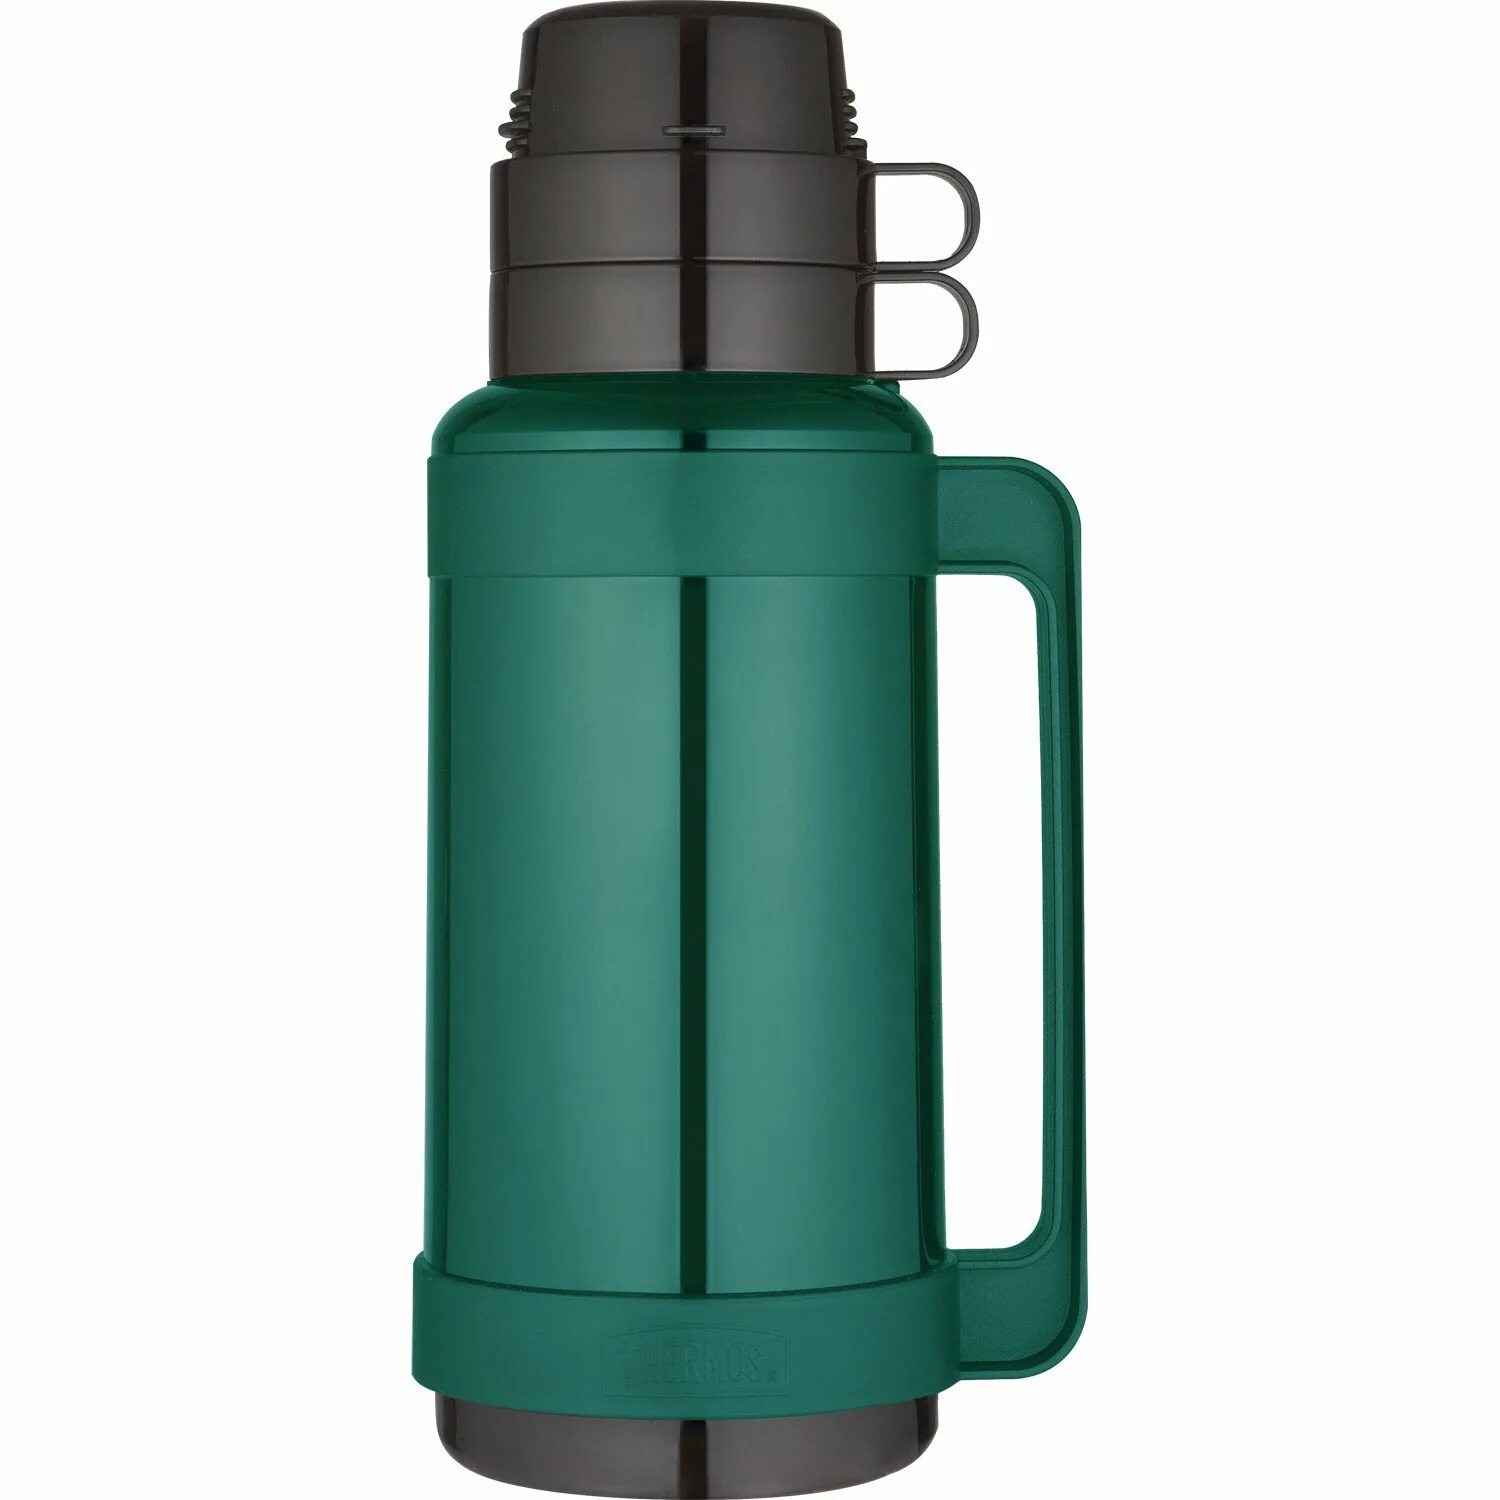 Vacuum Flask термос 1.8. Термос capacity 1.8. Zero h20 термос Premium Insulated. Thermos capacity 1.8l. 32 1800